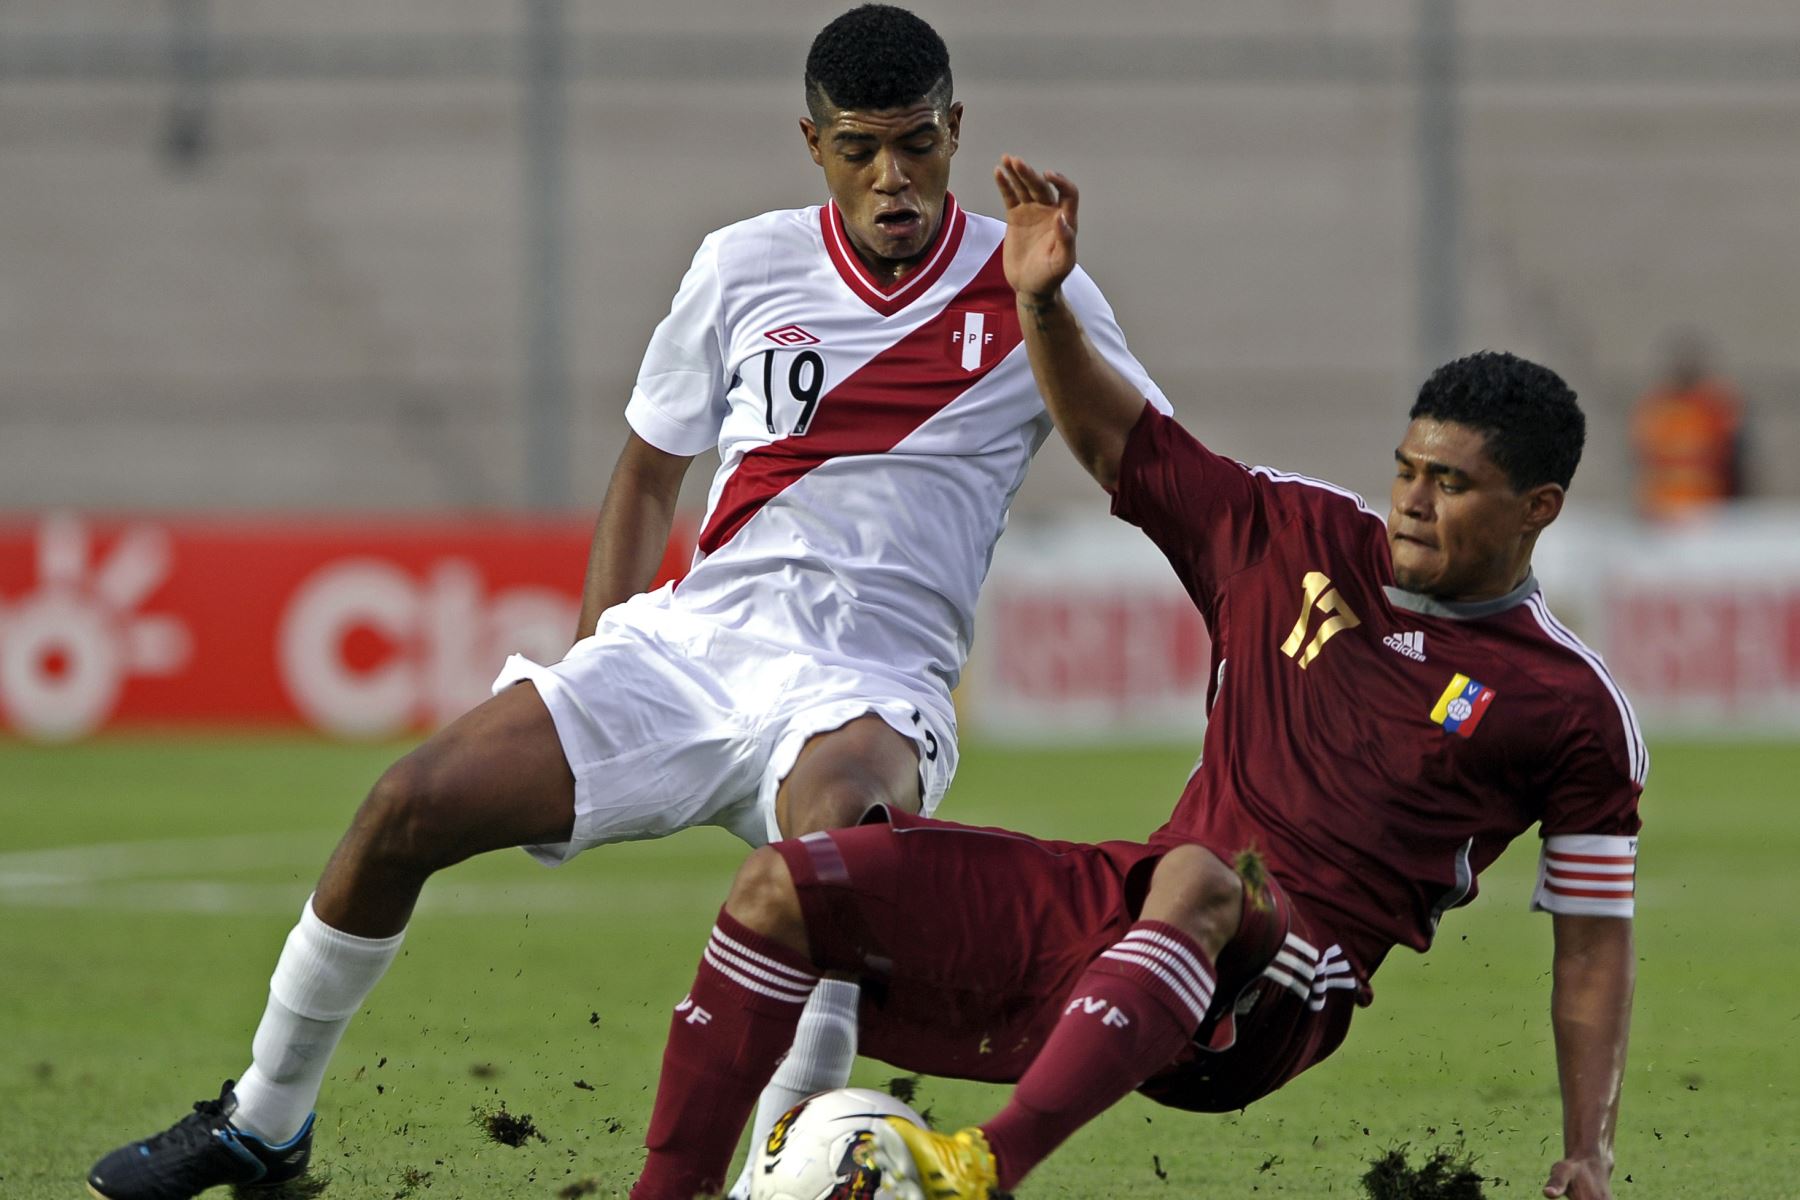 Wilder Cartagena, jugador convocado para para el repechaje Catar 2022.
Foto: AFP